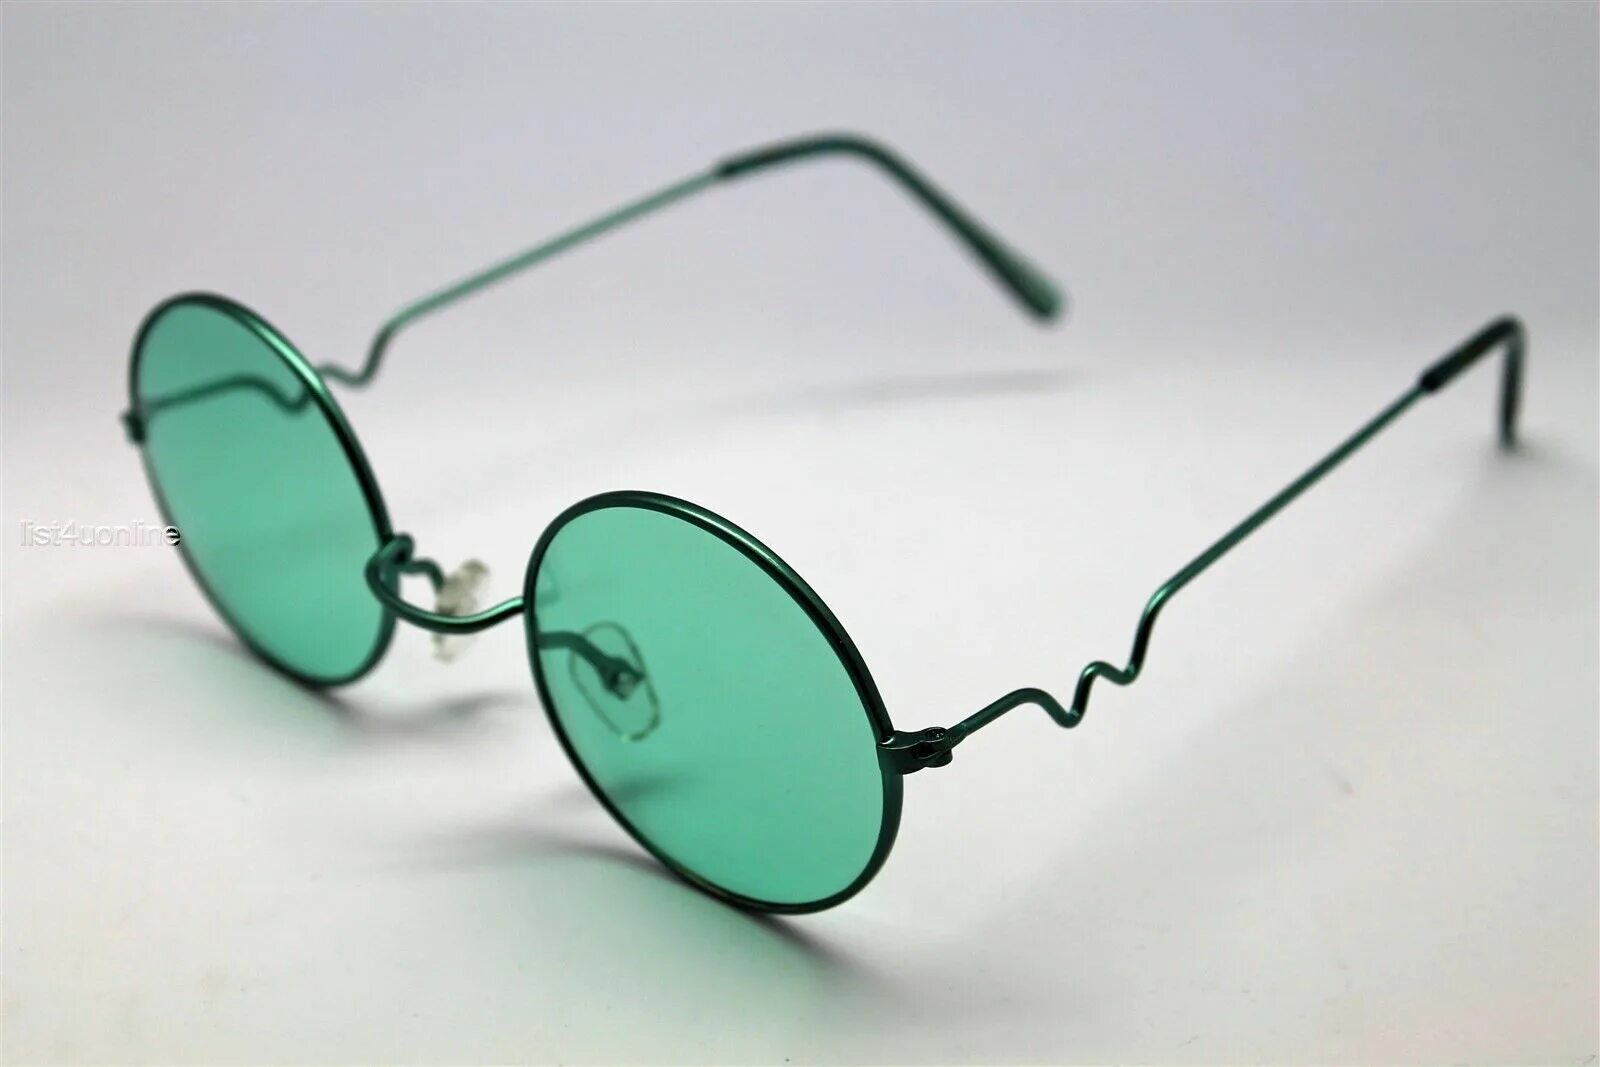 Очко купить недорого. Круглые зелёные очки Джона Леннона. Зеленые круглые очки. Зеленые солнцезащитные очки. Солнцезащитные очки с зелеными стеклами.